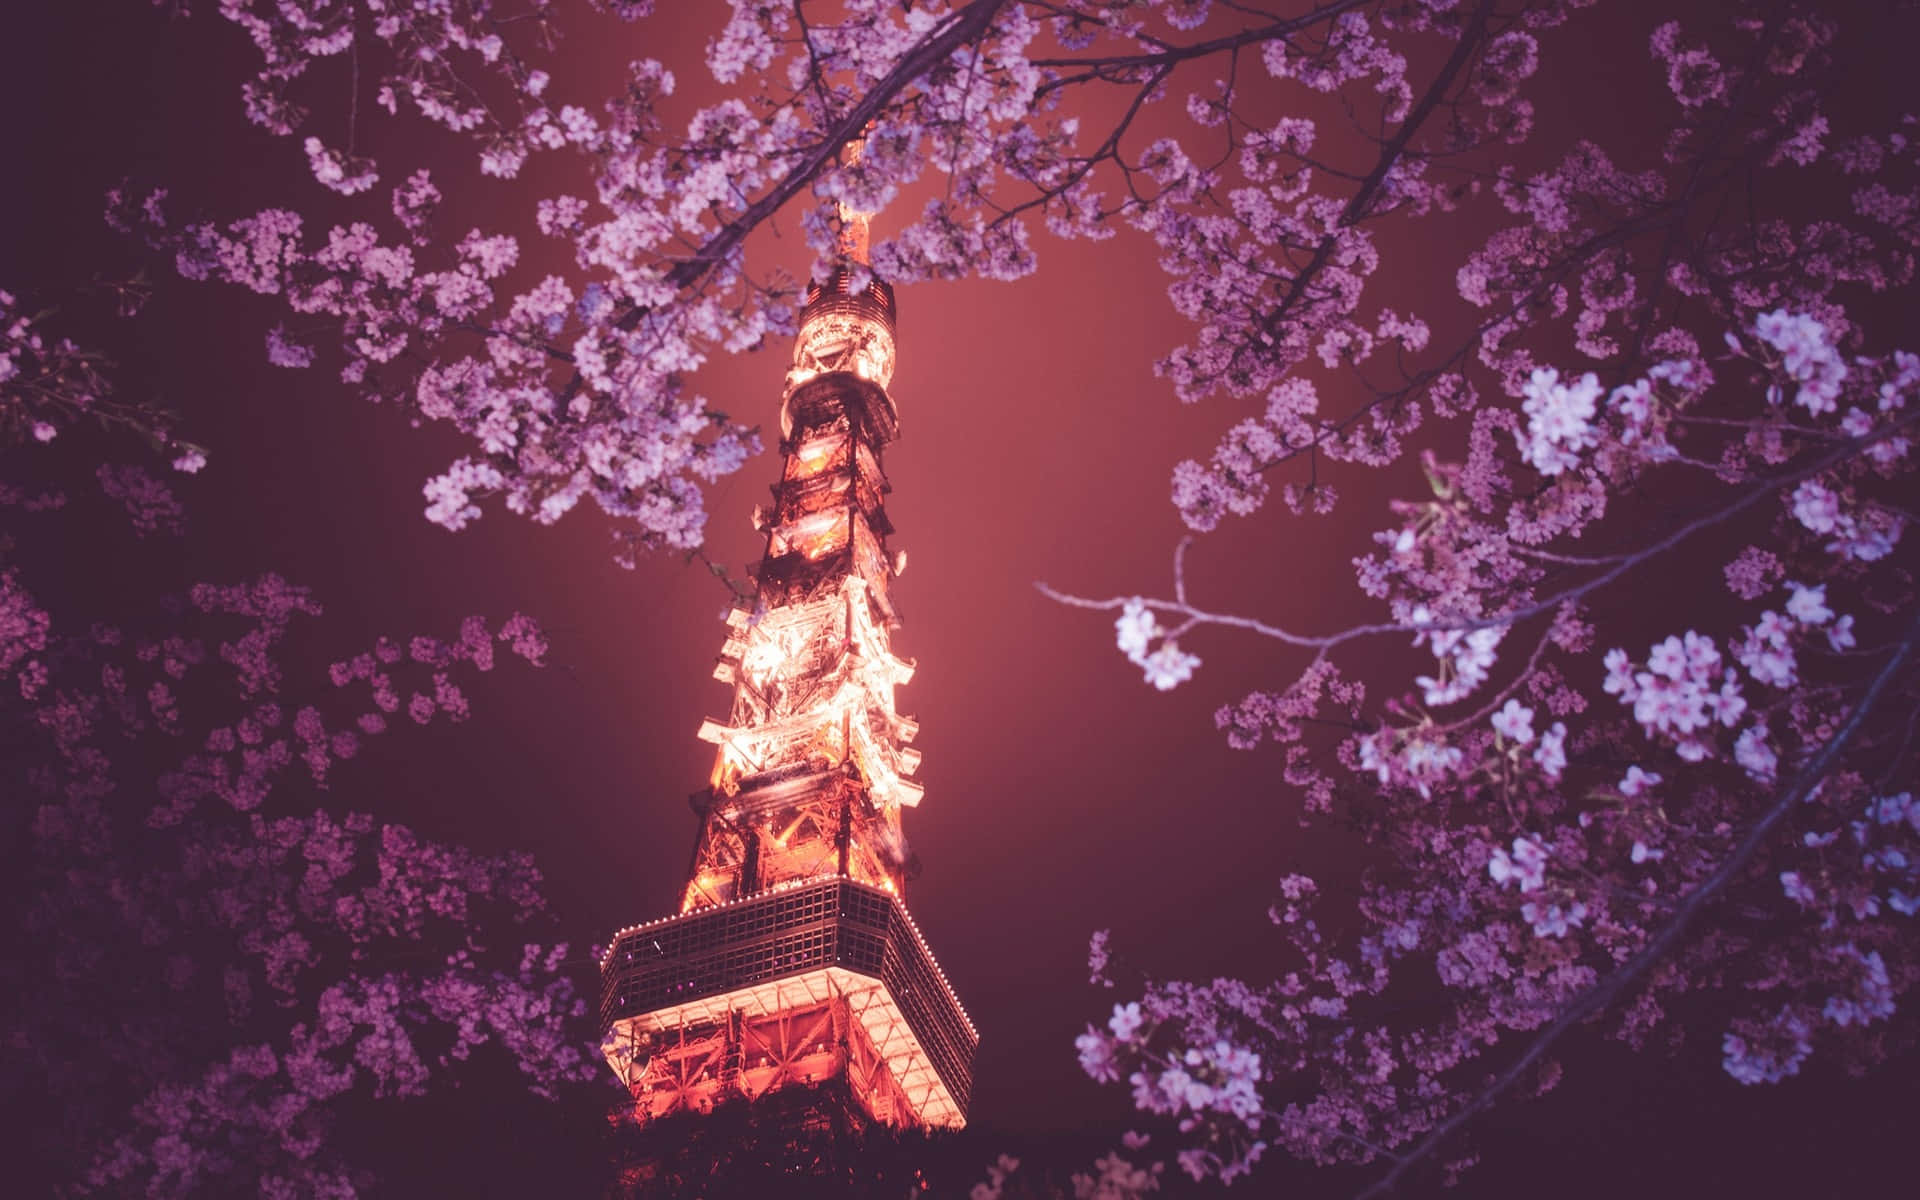 Hintergrundbildvon Tokio: Tokioturm Über Kirschbaum